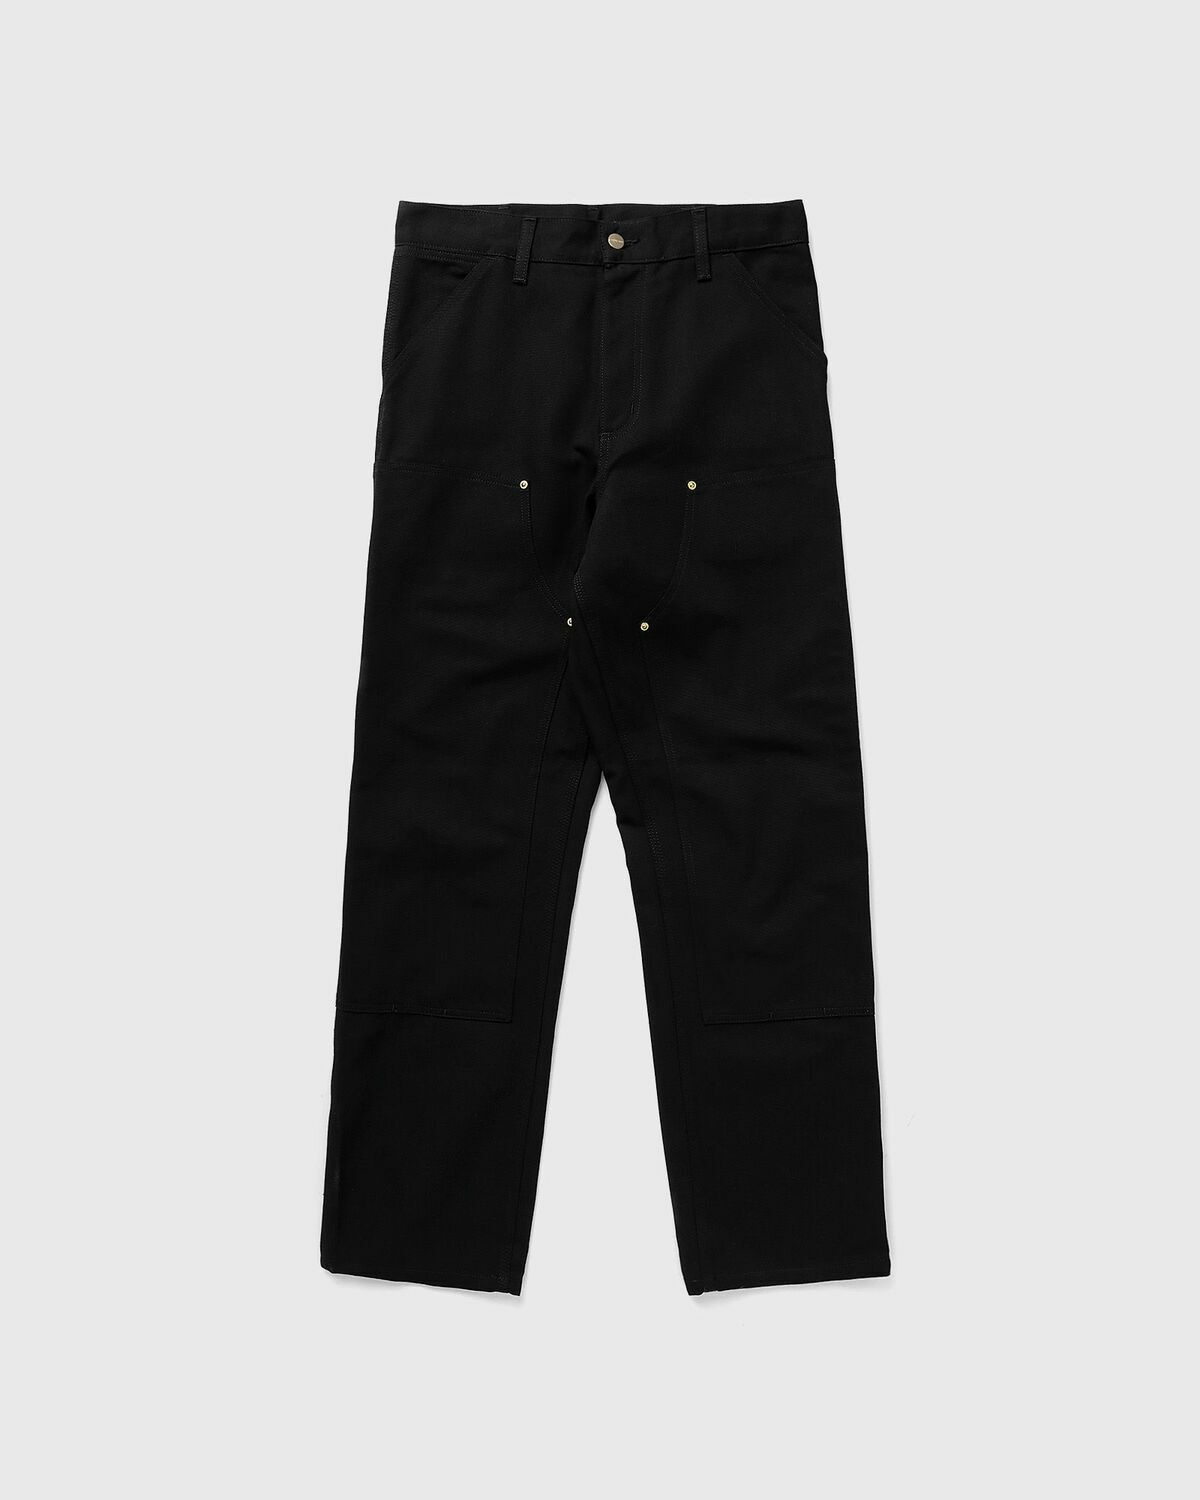 Carhartt Wip Double Knee Pant Black - Mens - Jeans Carhartt WIP